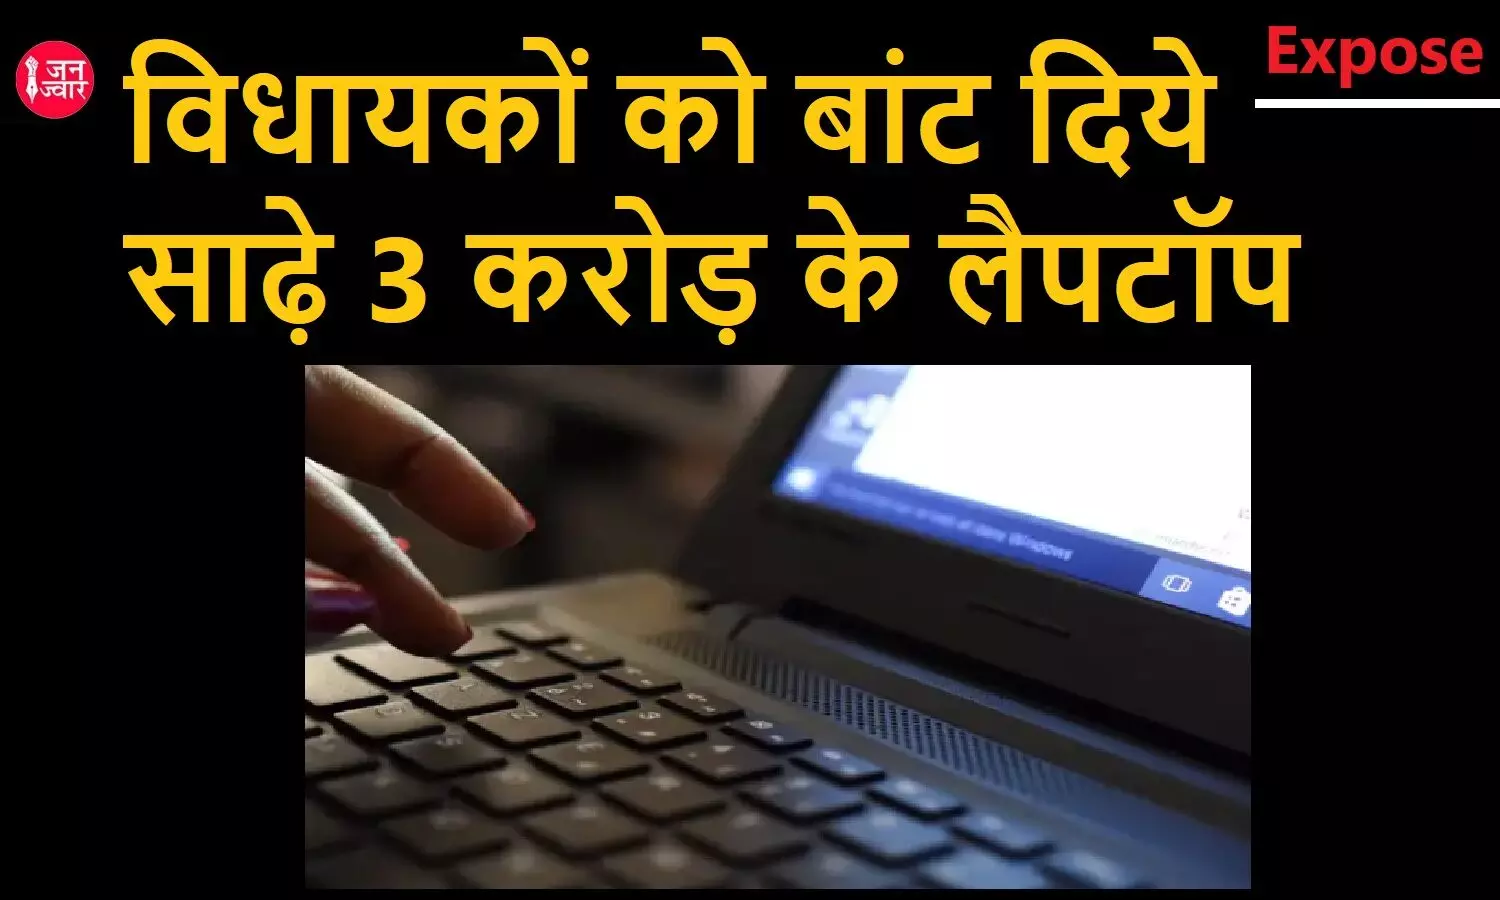 कर्ज में डूबे उत्तराखंड में भी माननीय विधायकों को बांट दिये गये साढ़े तीन करोड़ के लैपटॉप, RTI से हुआ खुलासा